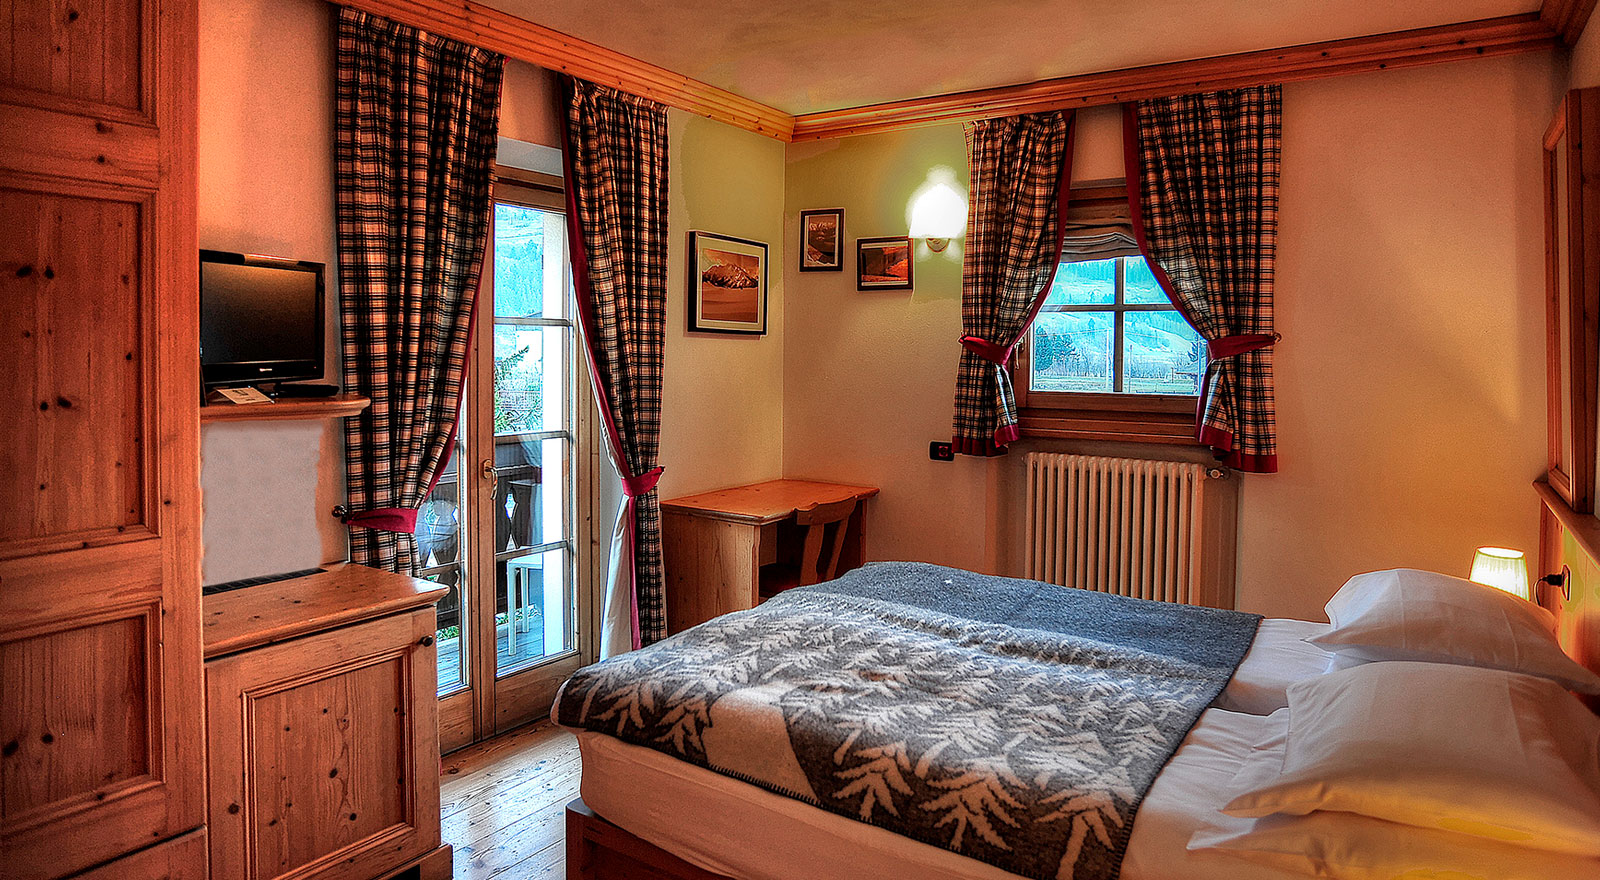 Camera con rivestimenti in legno naturale e Vista panoramica della Valtellina